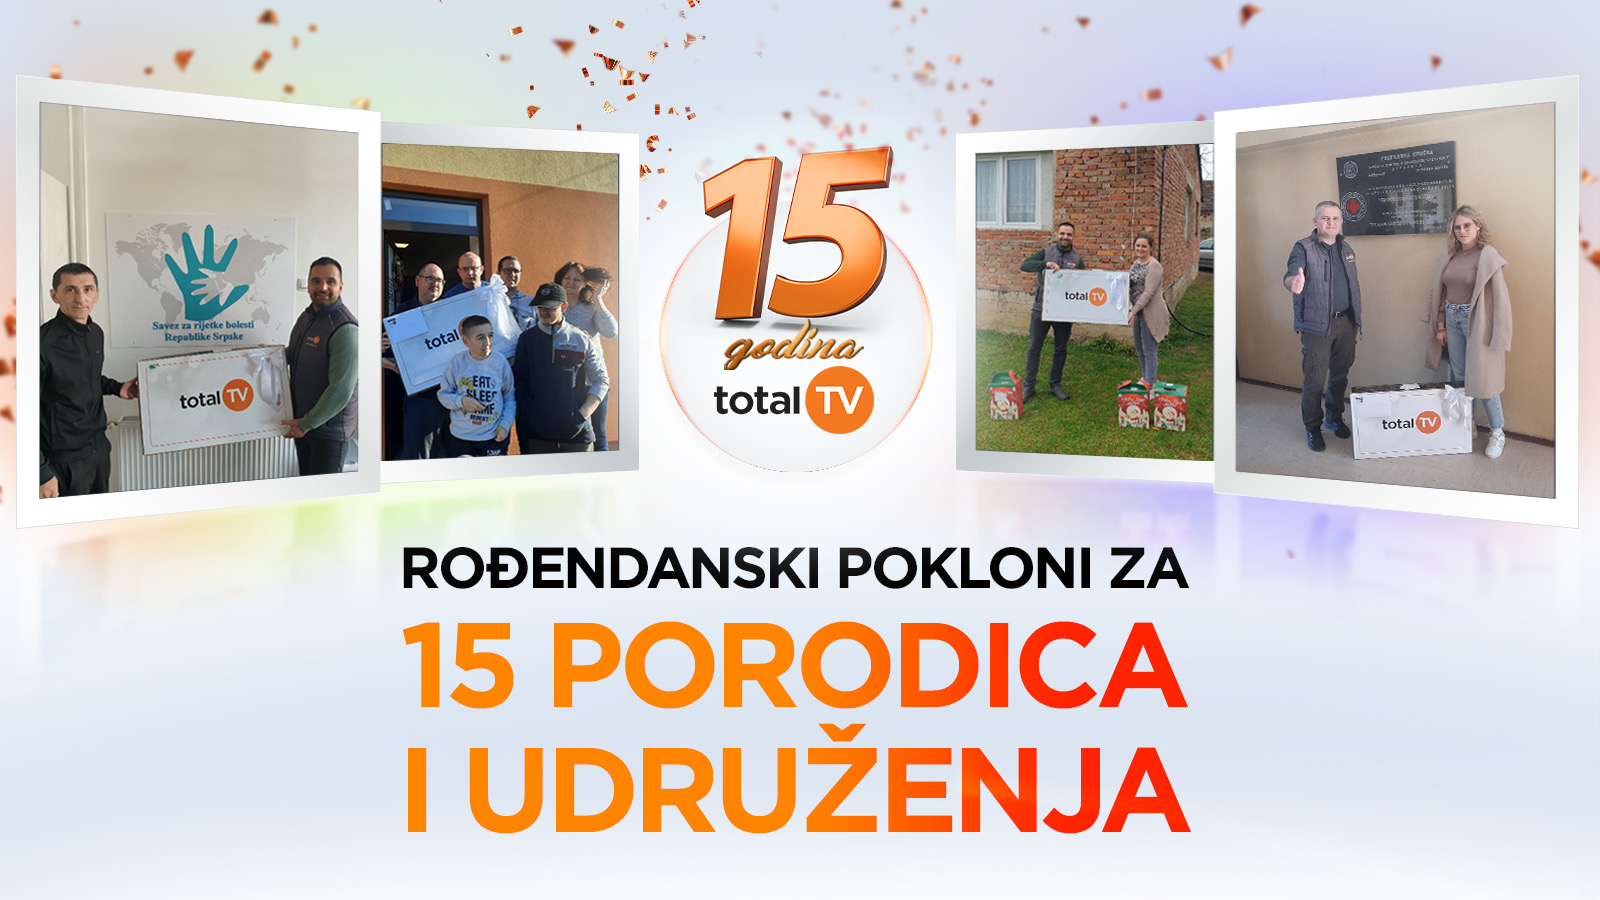 Rođendanski pokloni za 15 porodica i udruženja povodom 15 godina TOTAL TV u Bosni i Hercegovini